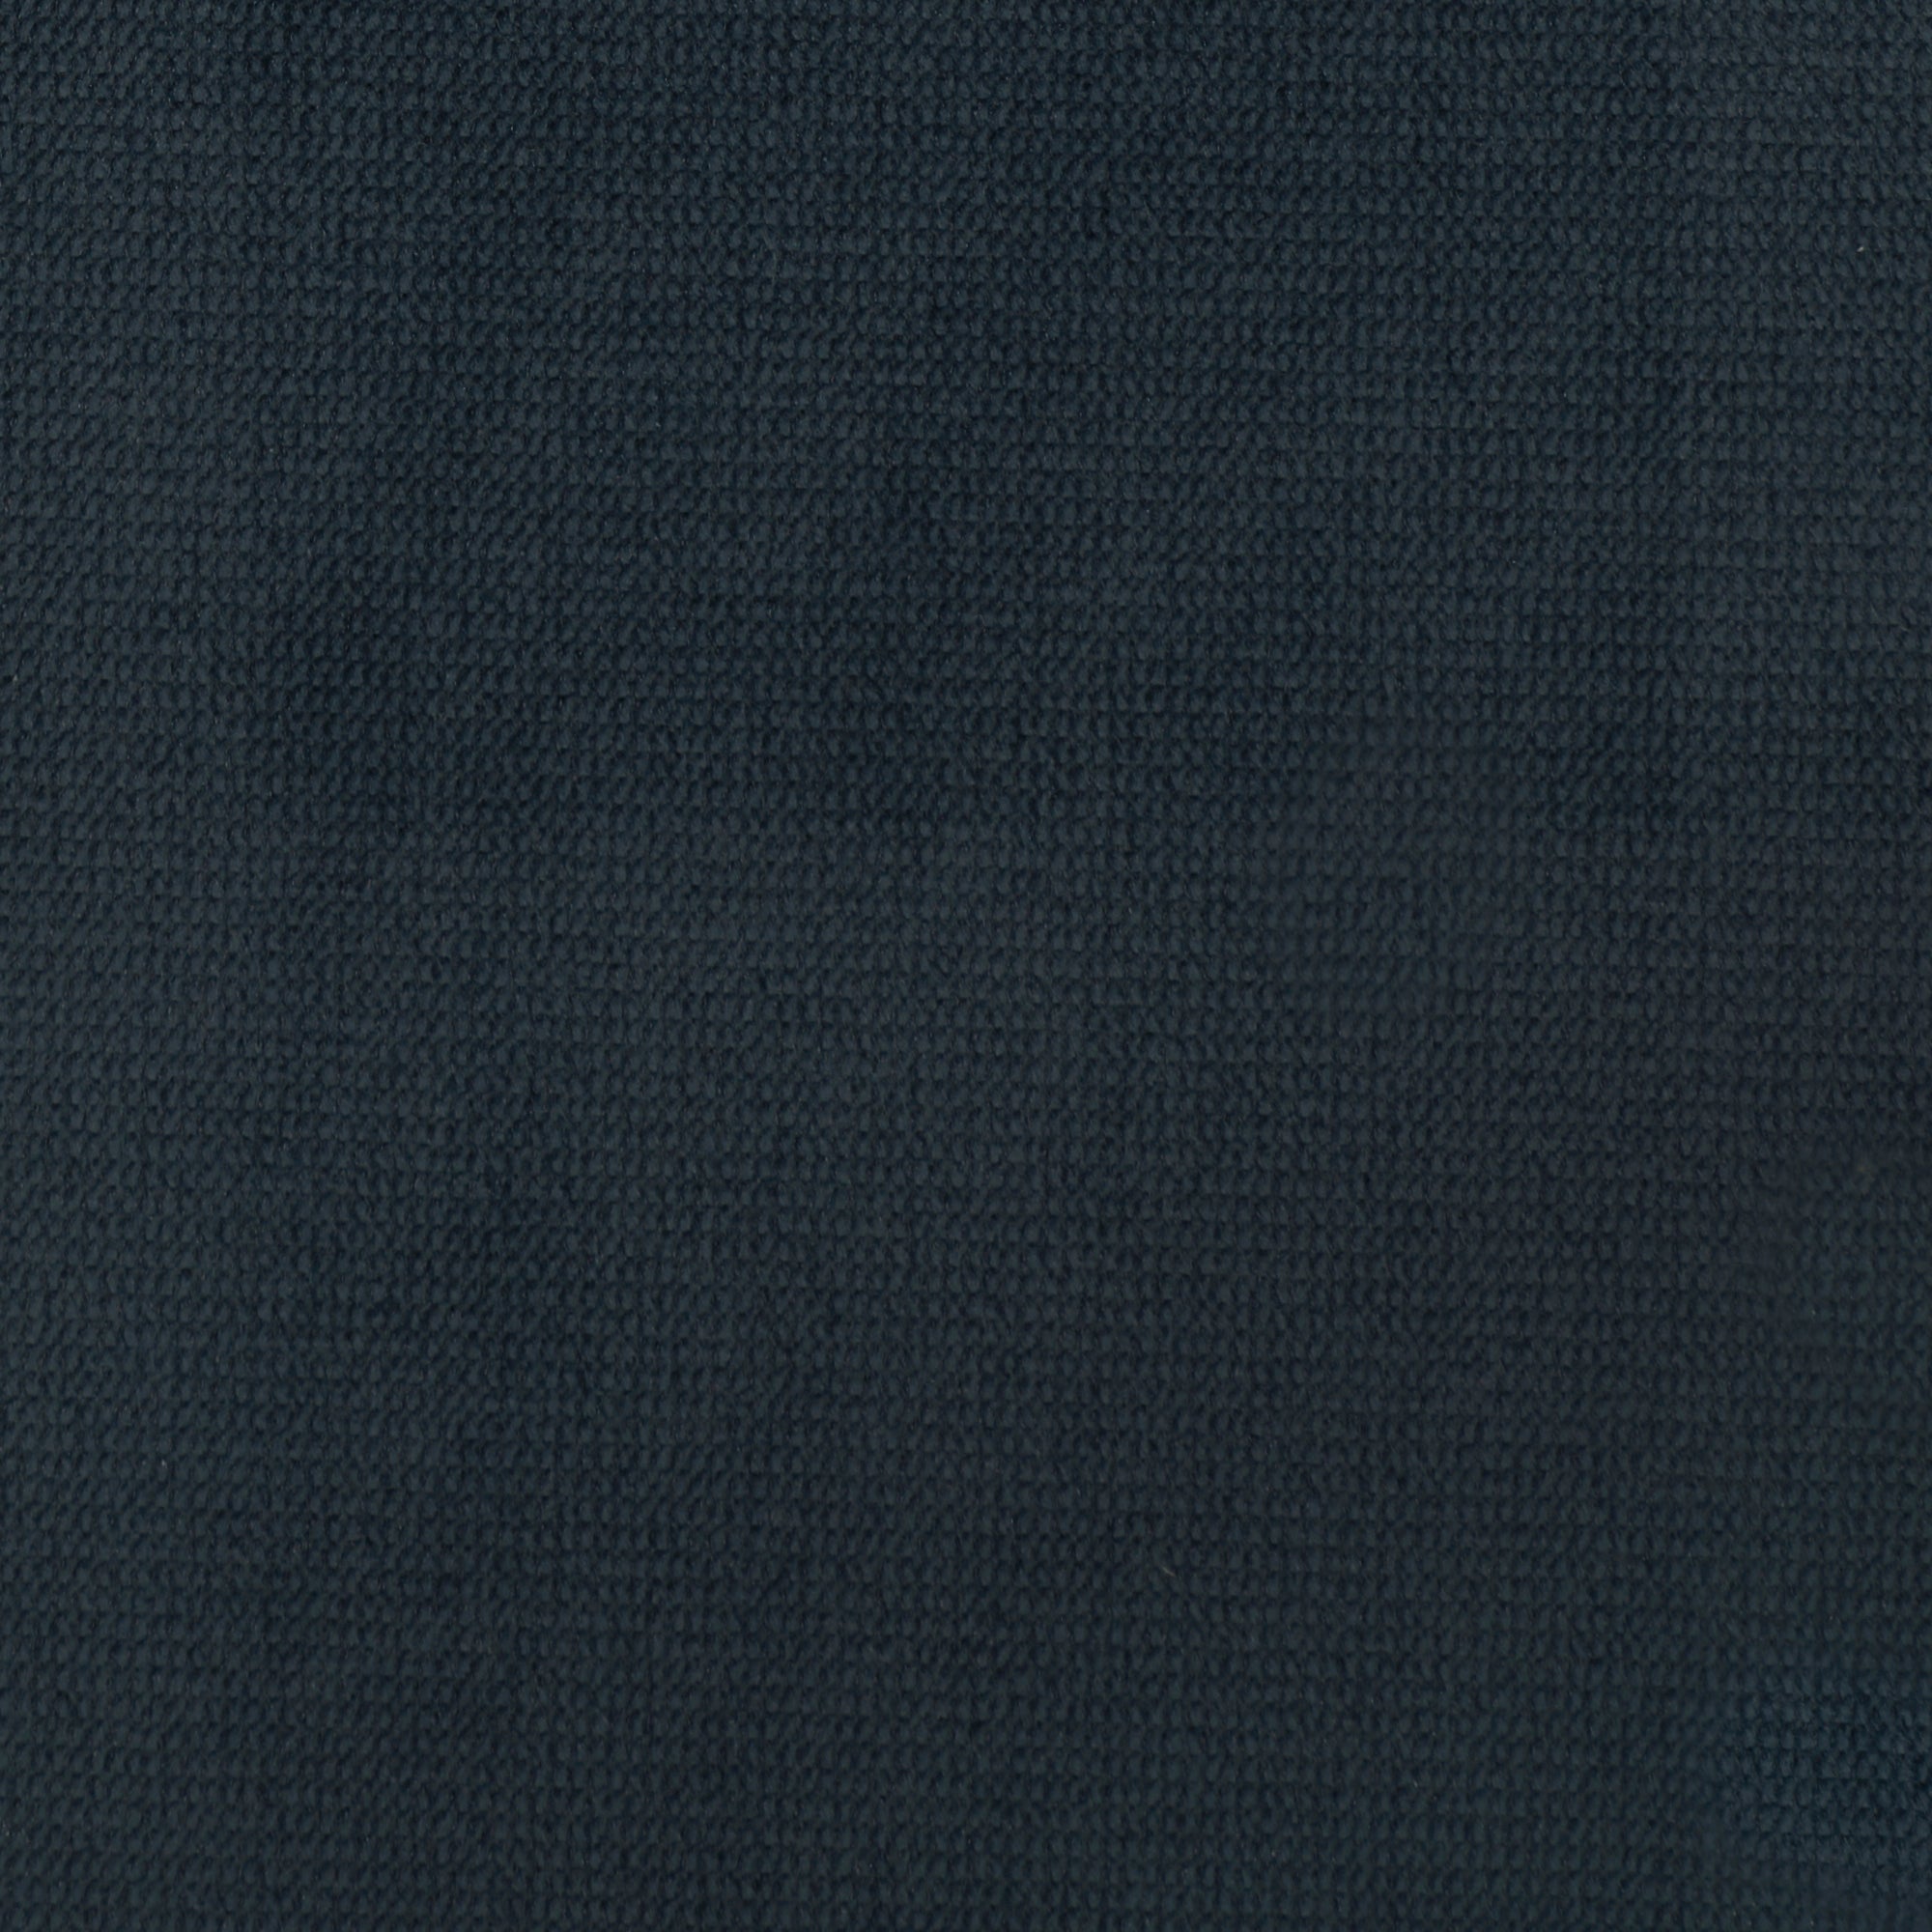 Premium Photo  Blue fabric texture